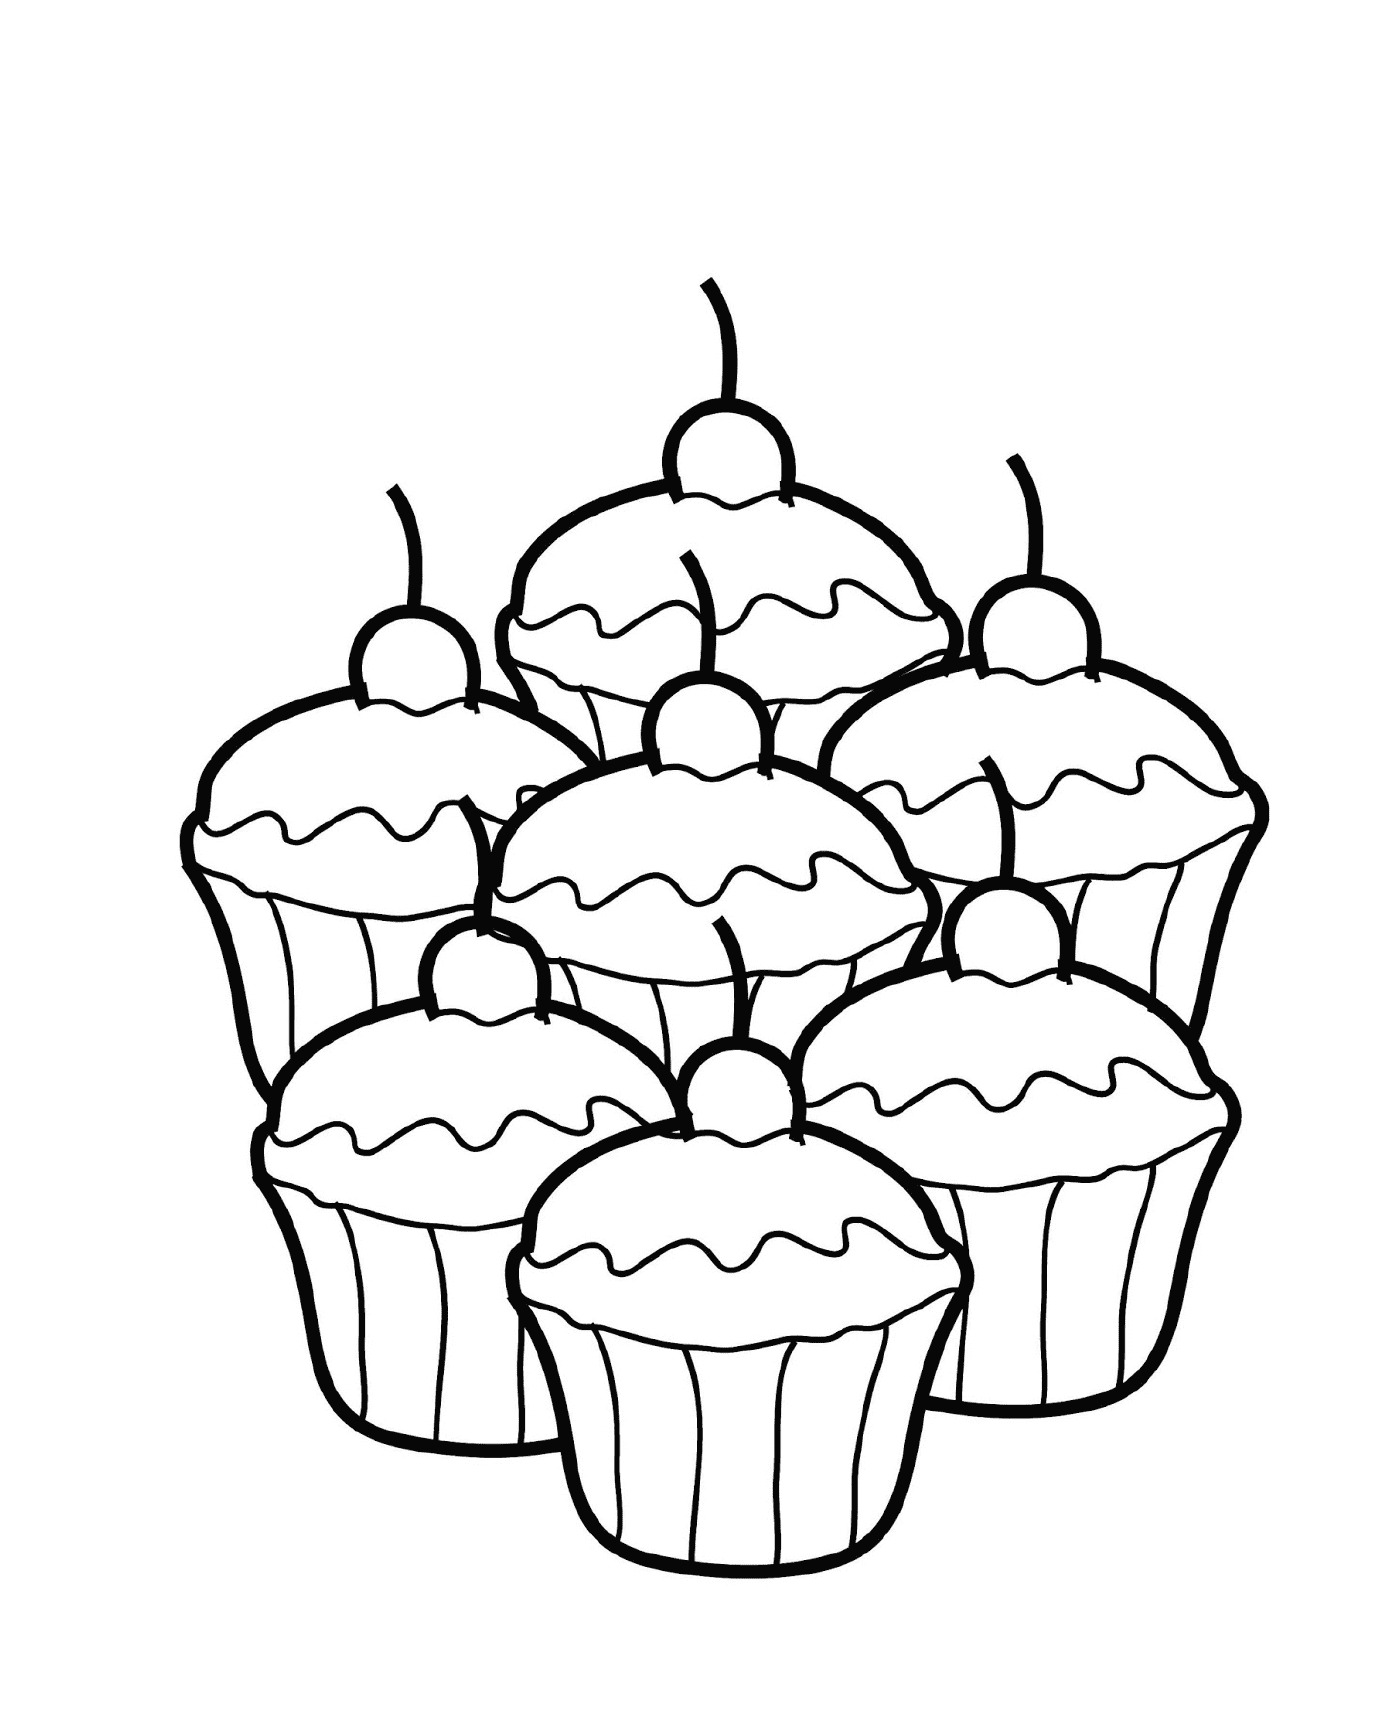  Cuatro cupcakes juntos 